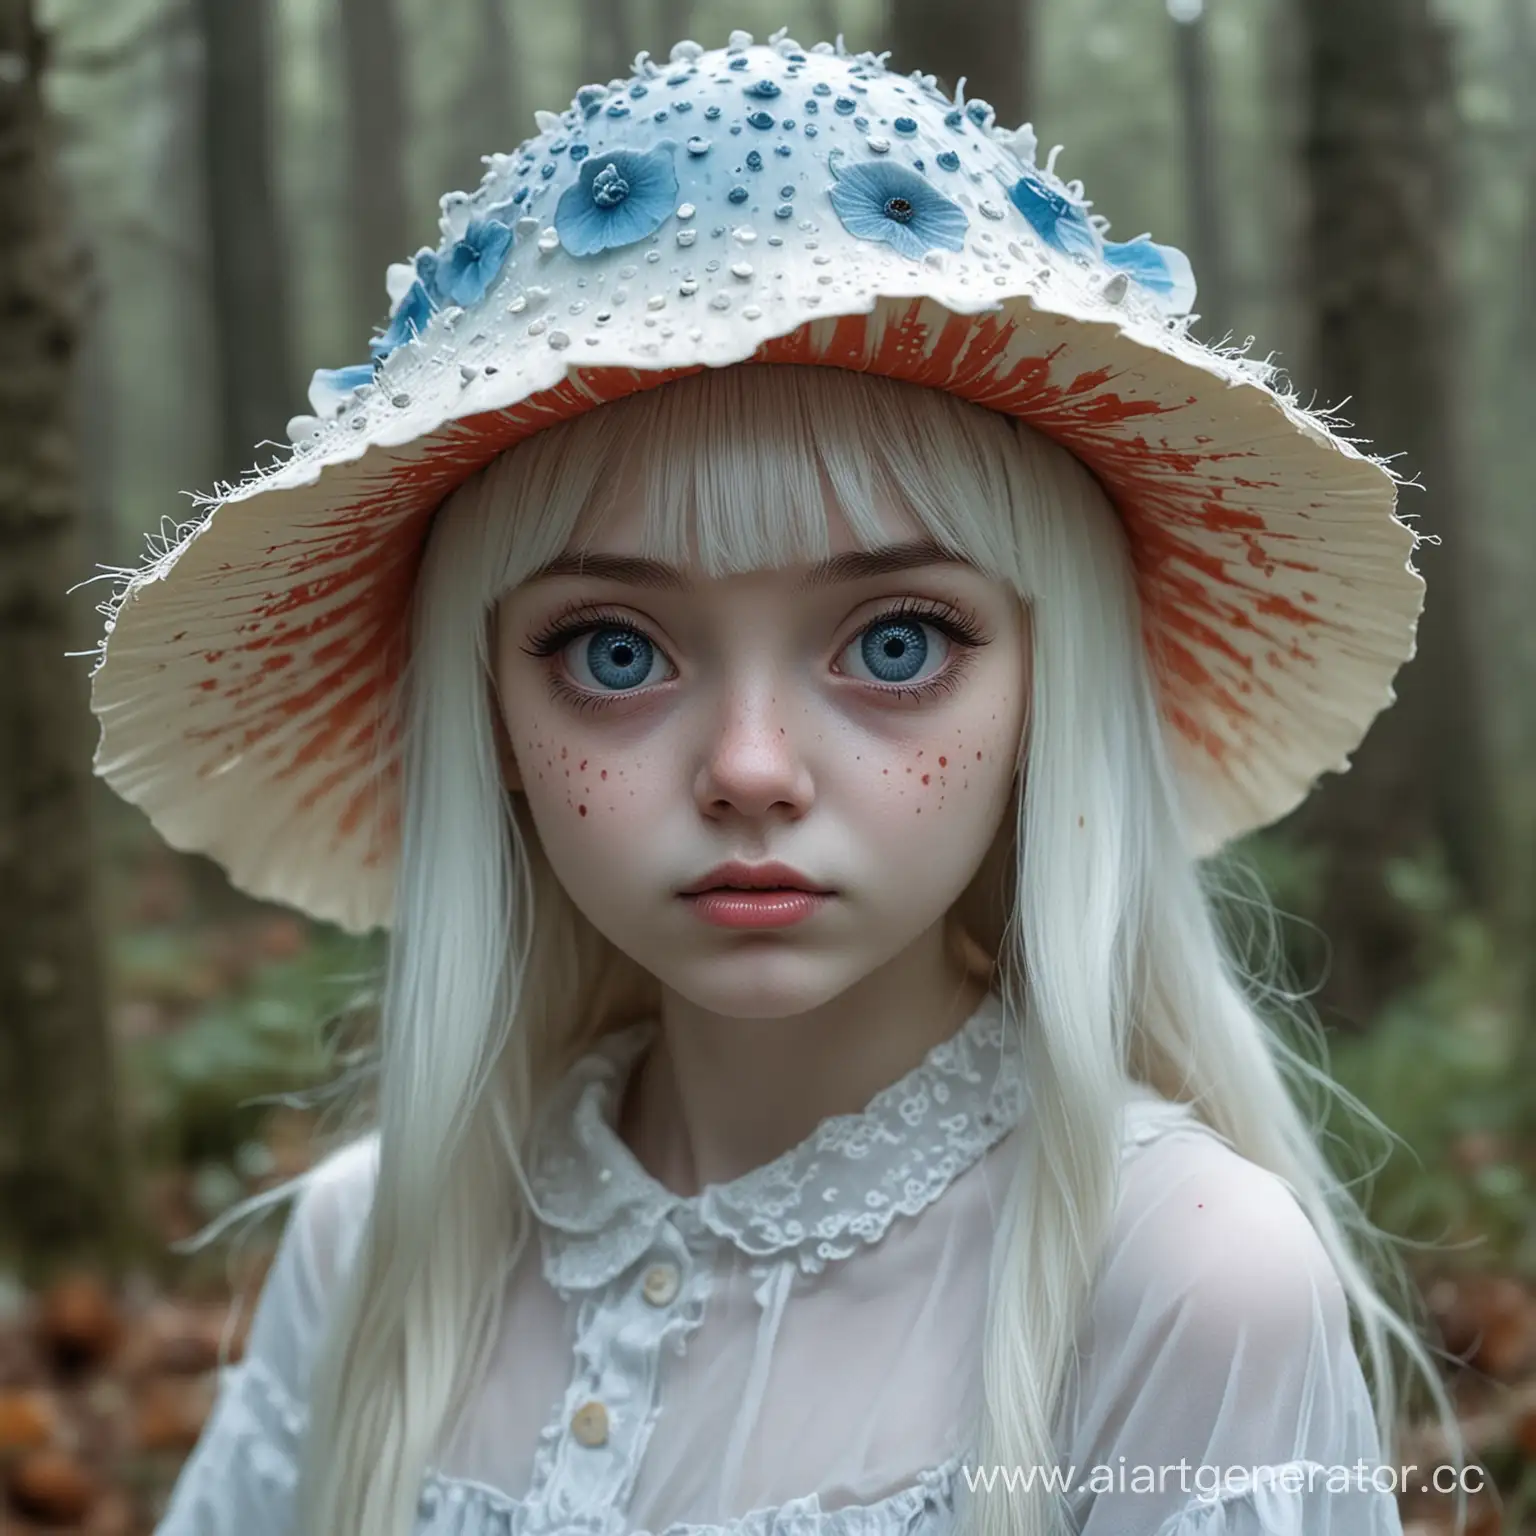 Девушка призрак с кожей белого цвета и подтеками, у нее шляпа в виде гриба мухомора голубого цвета и глазами вместо пятен мухомора . Лицо белое тоже с подтеками, глаза пустые прозрачные. 